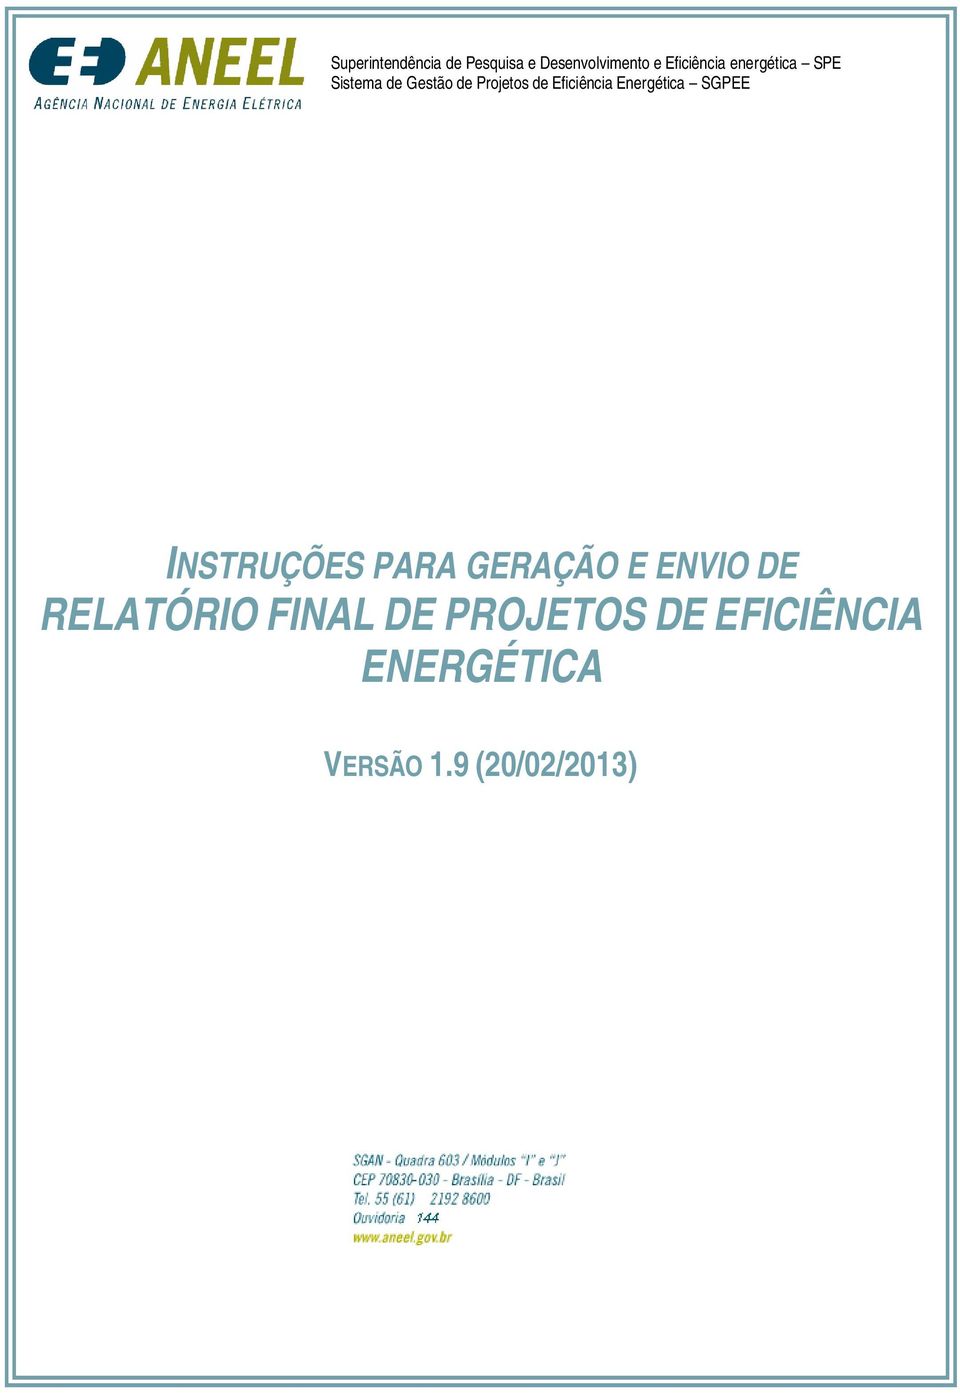 Energética SGPEE INSTRUÇÕES PARA GERAÇÃO E ENVIO DE RELATÓRIO